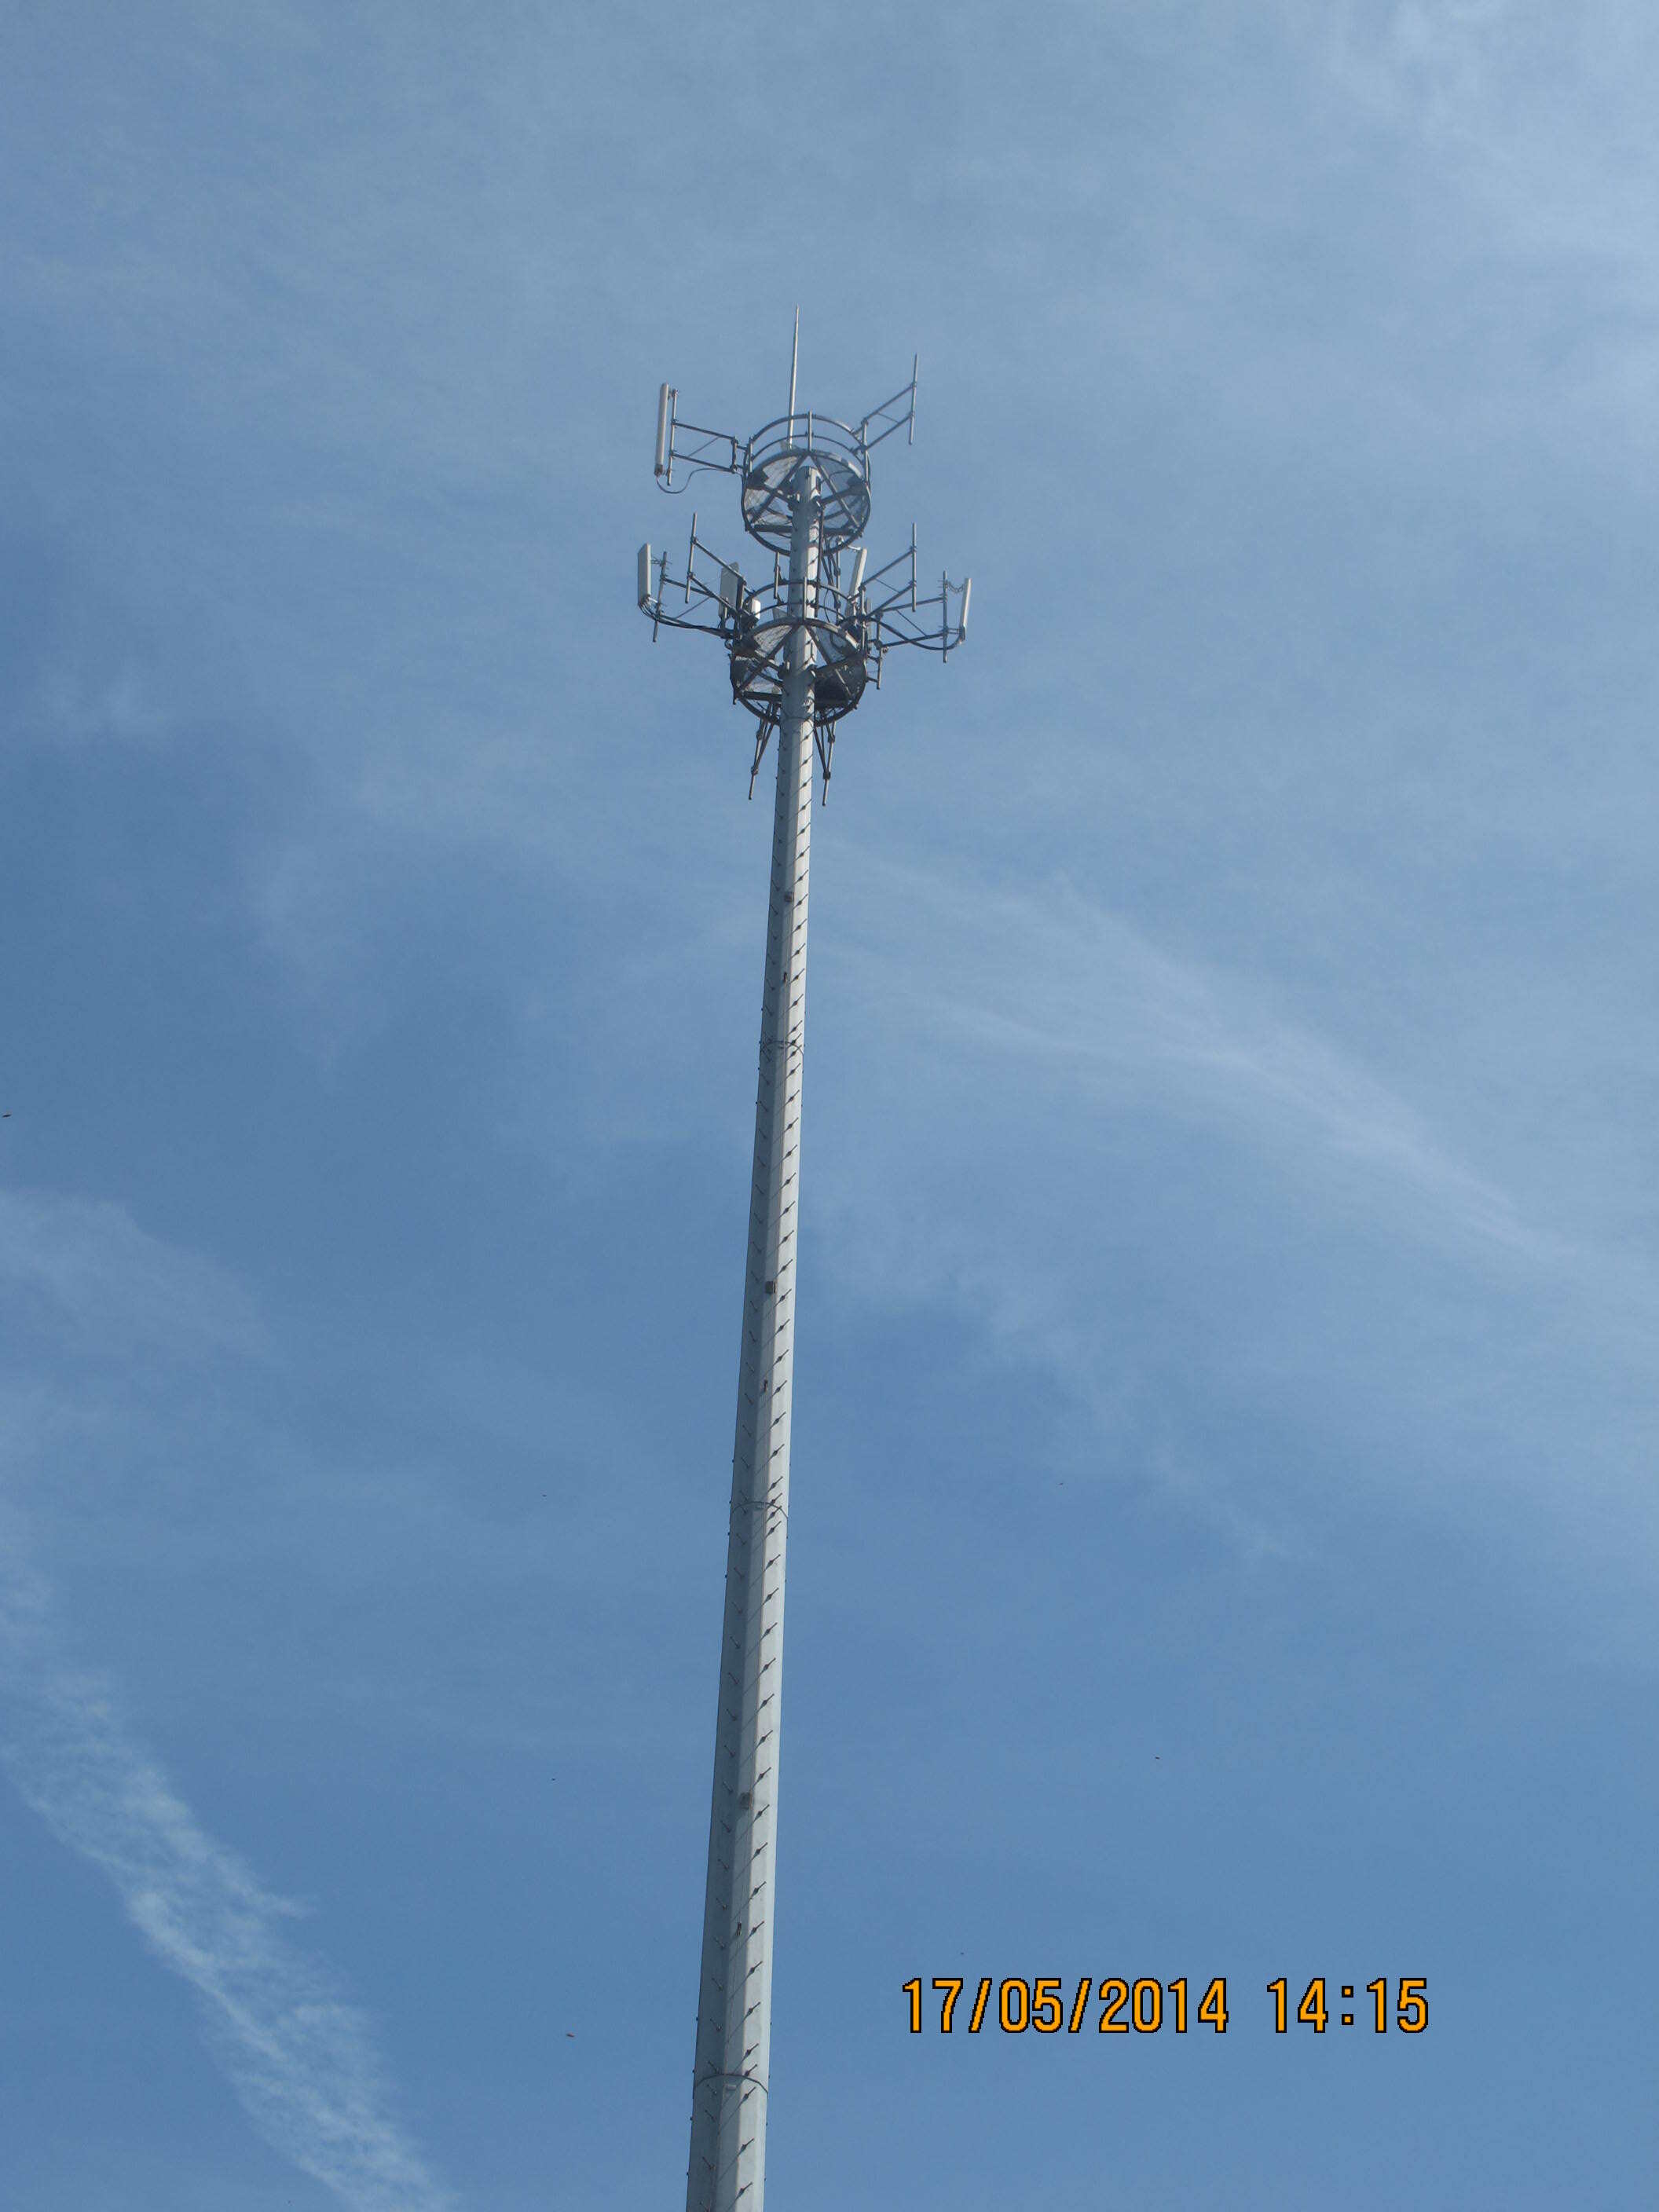 Communication Monopole Tower details